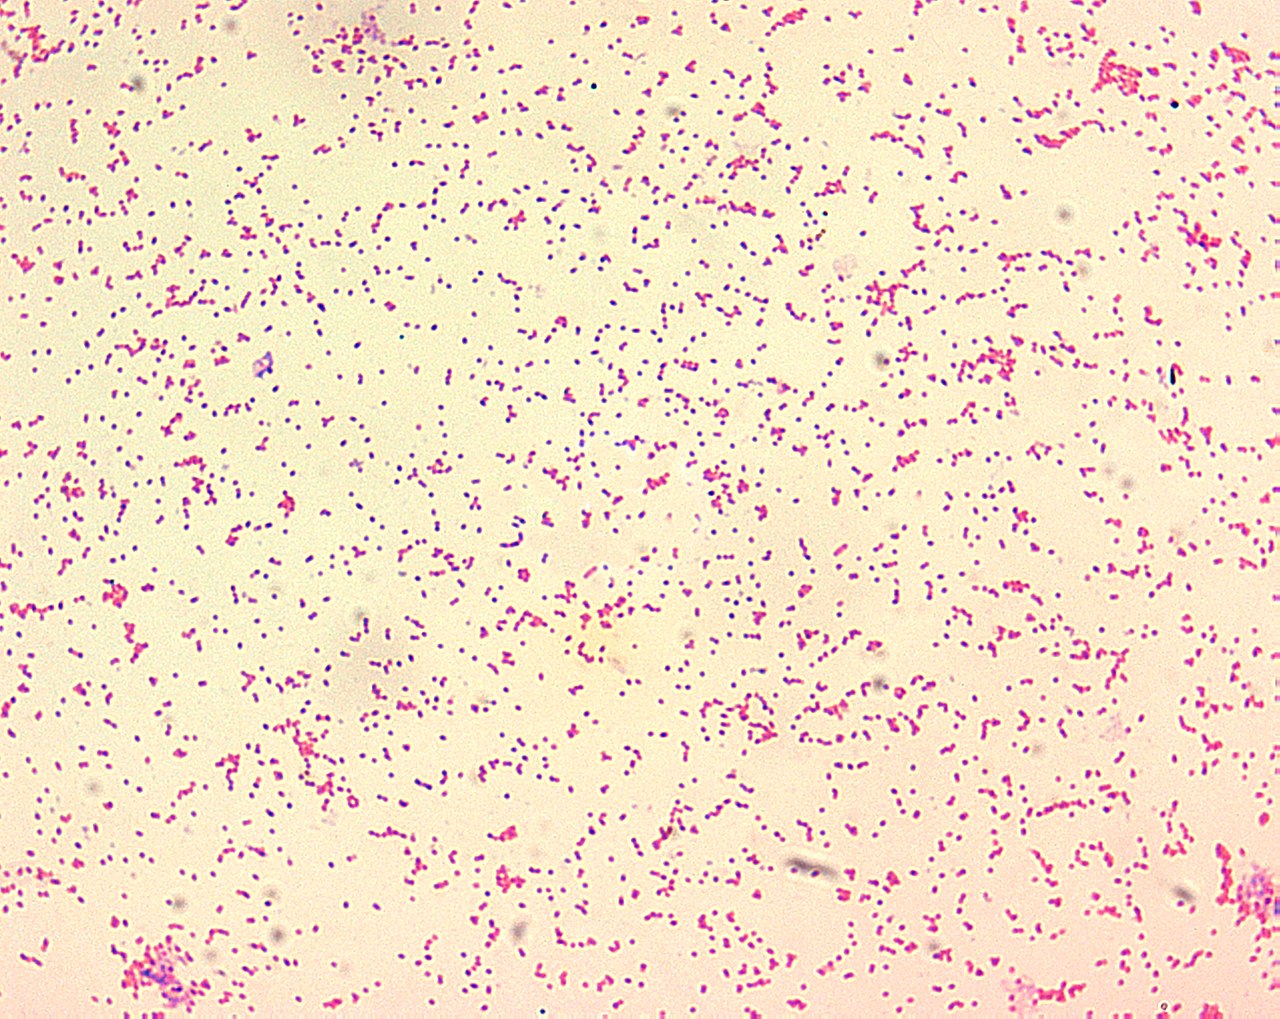 Il batterio che causa la brucellosi visto al microscopio